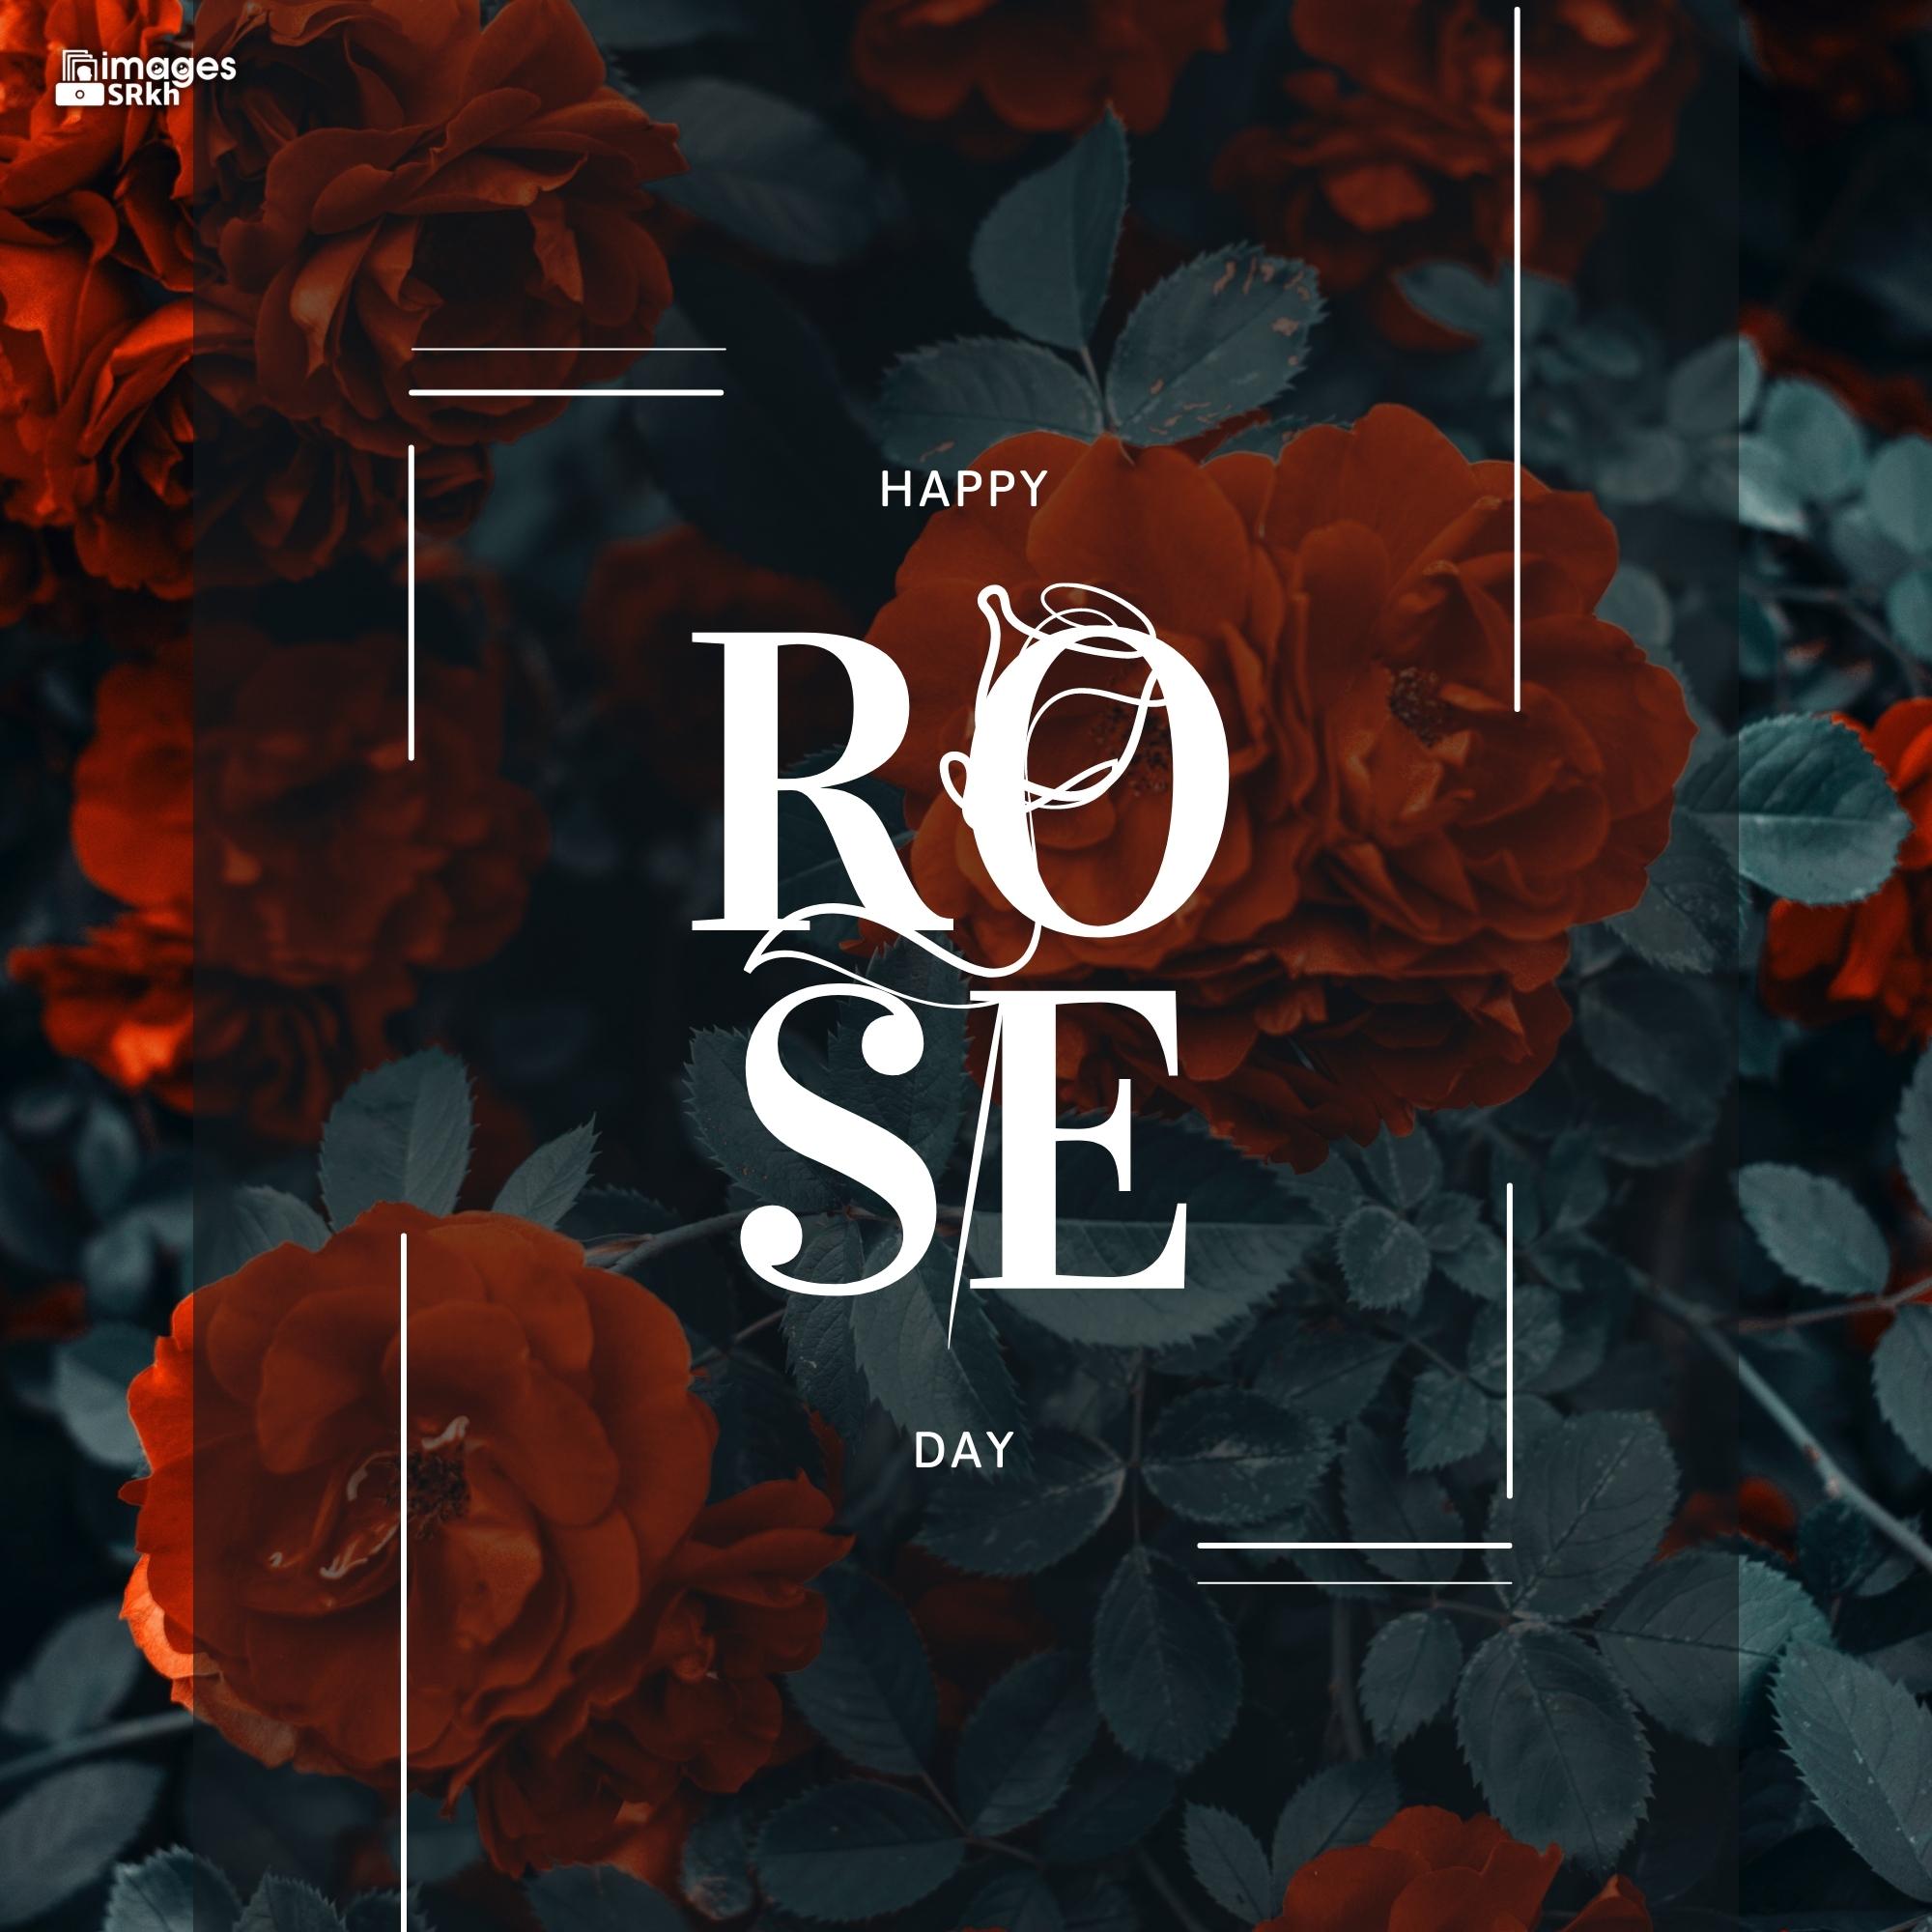 Rose Day Wishing Image Hd Download (17)